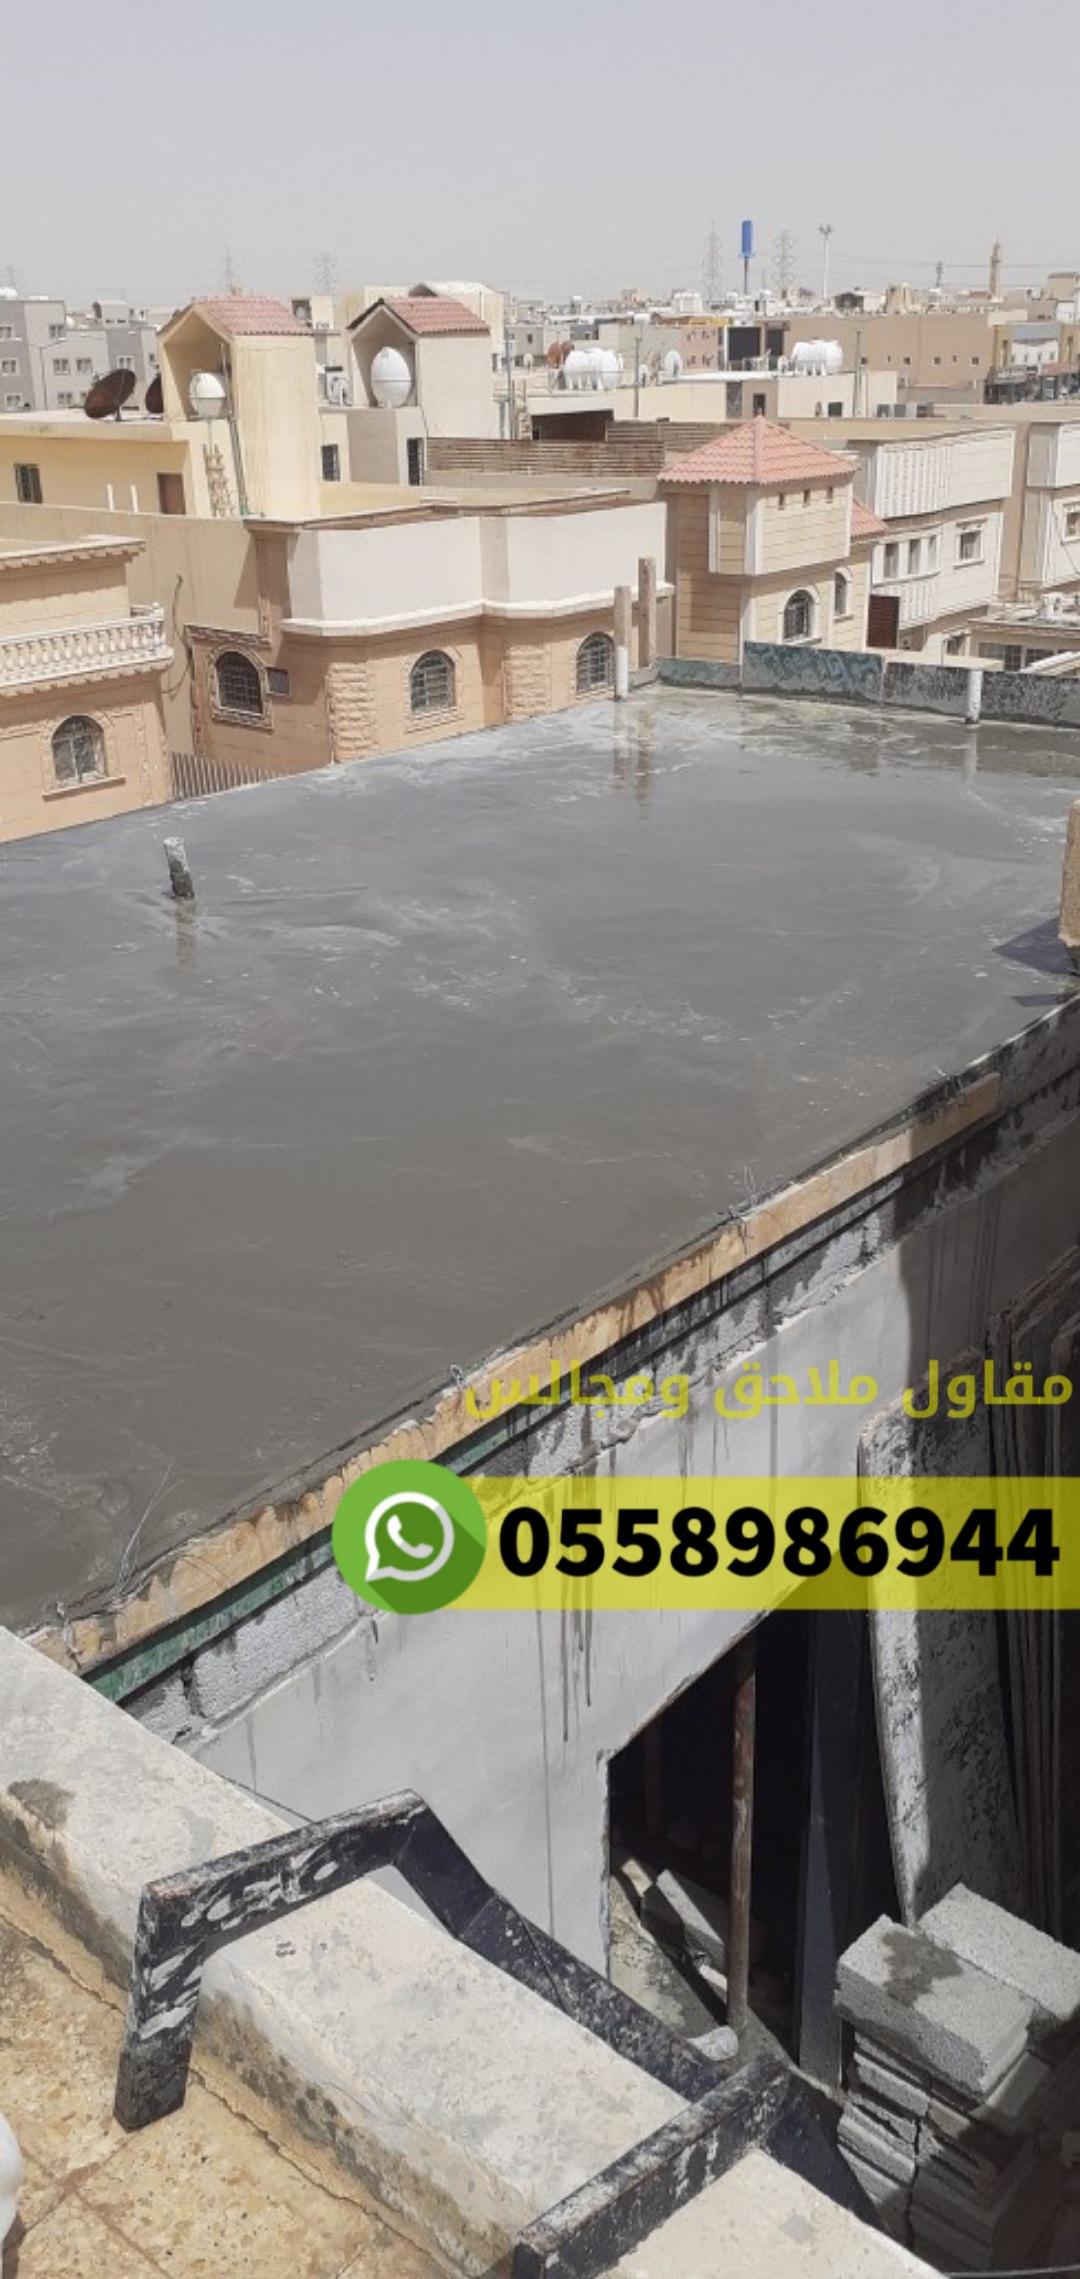 بناء غرف ملاحق مجالس في مكة المكرمة حي النوارية ,0558986944 373351570